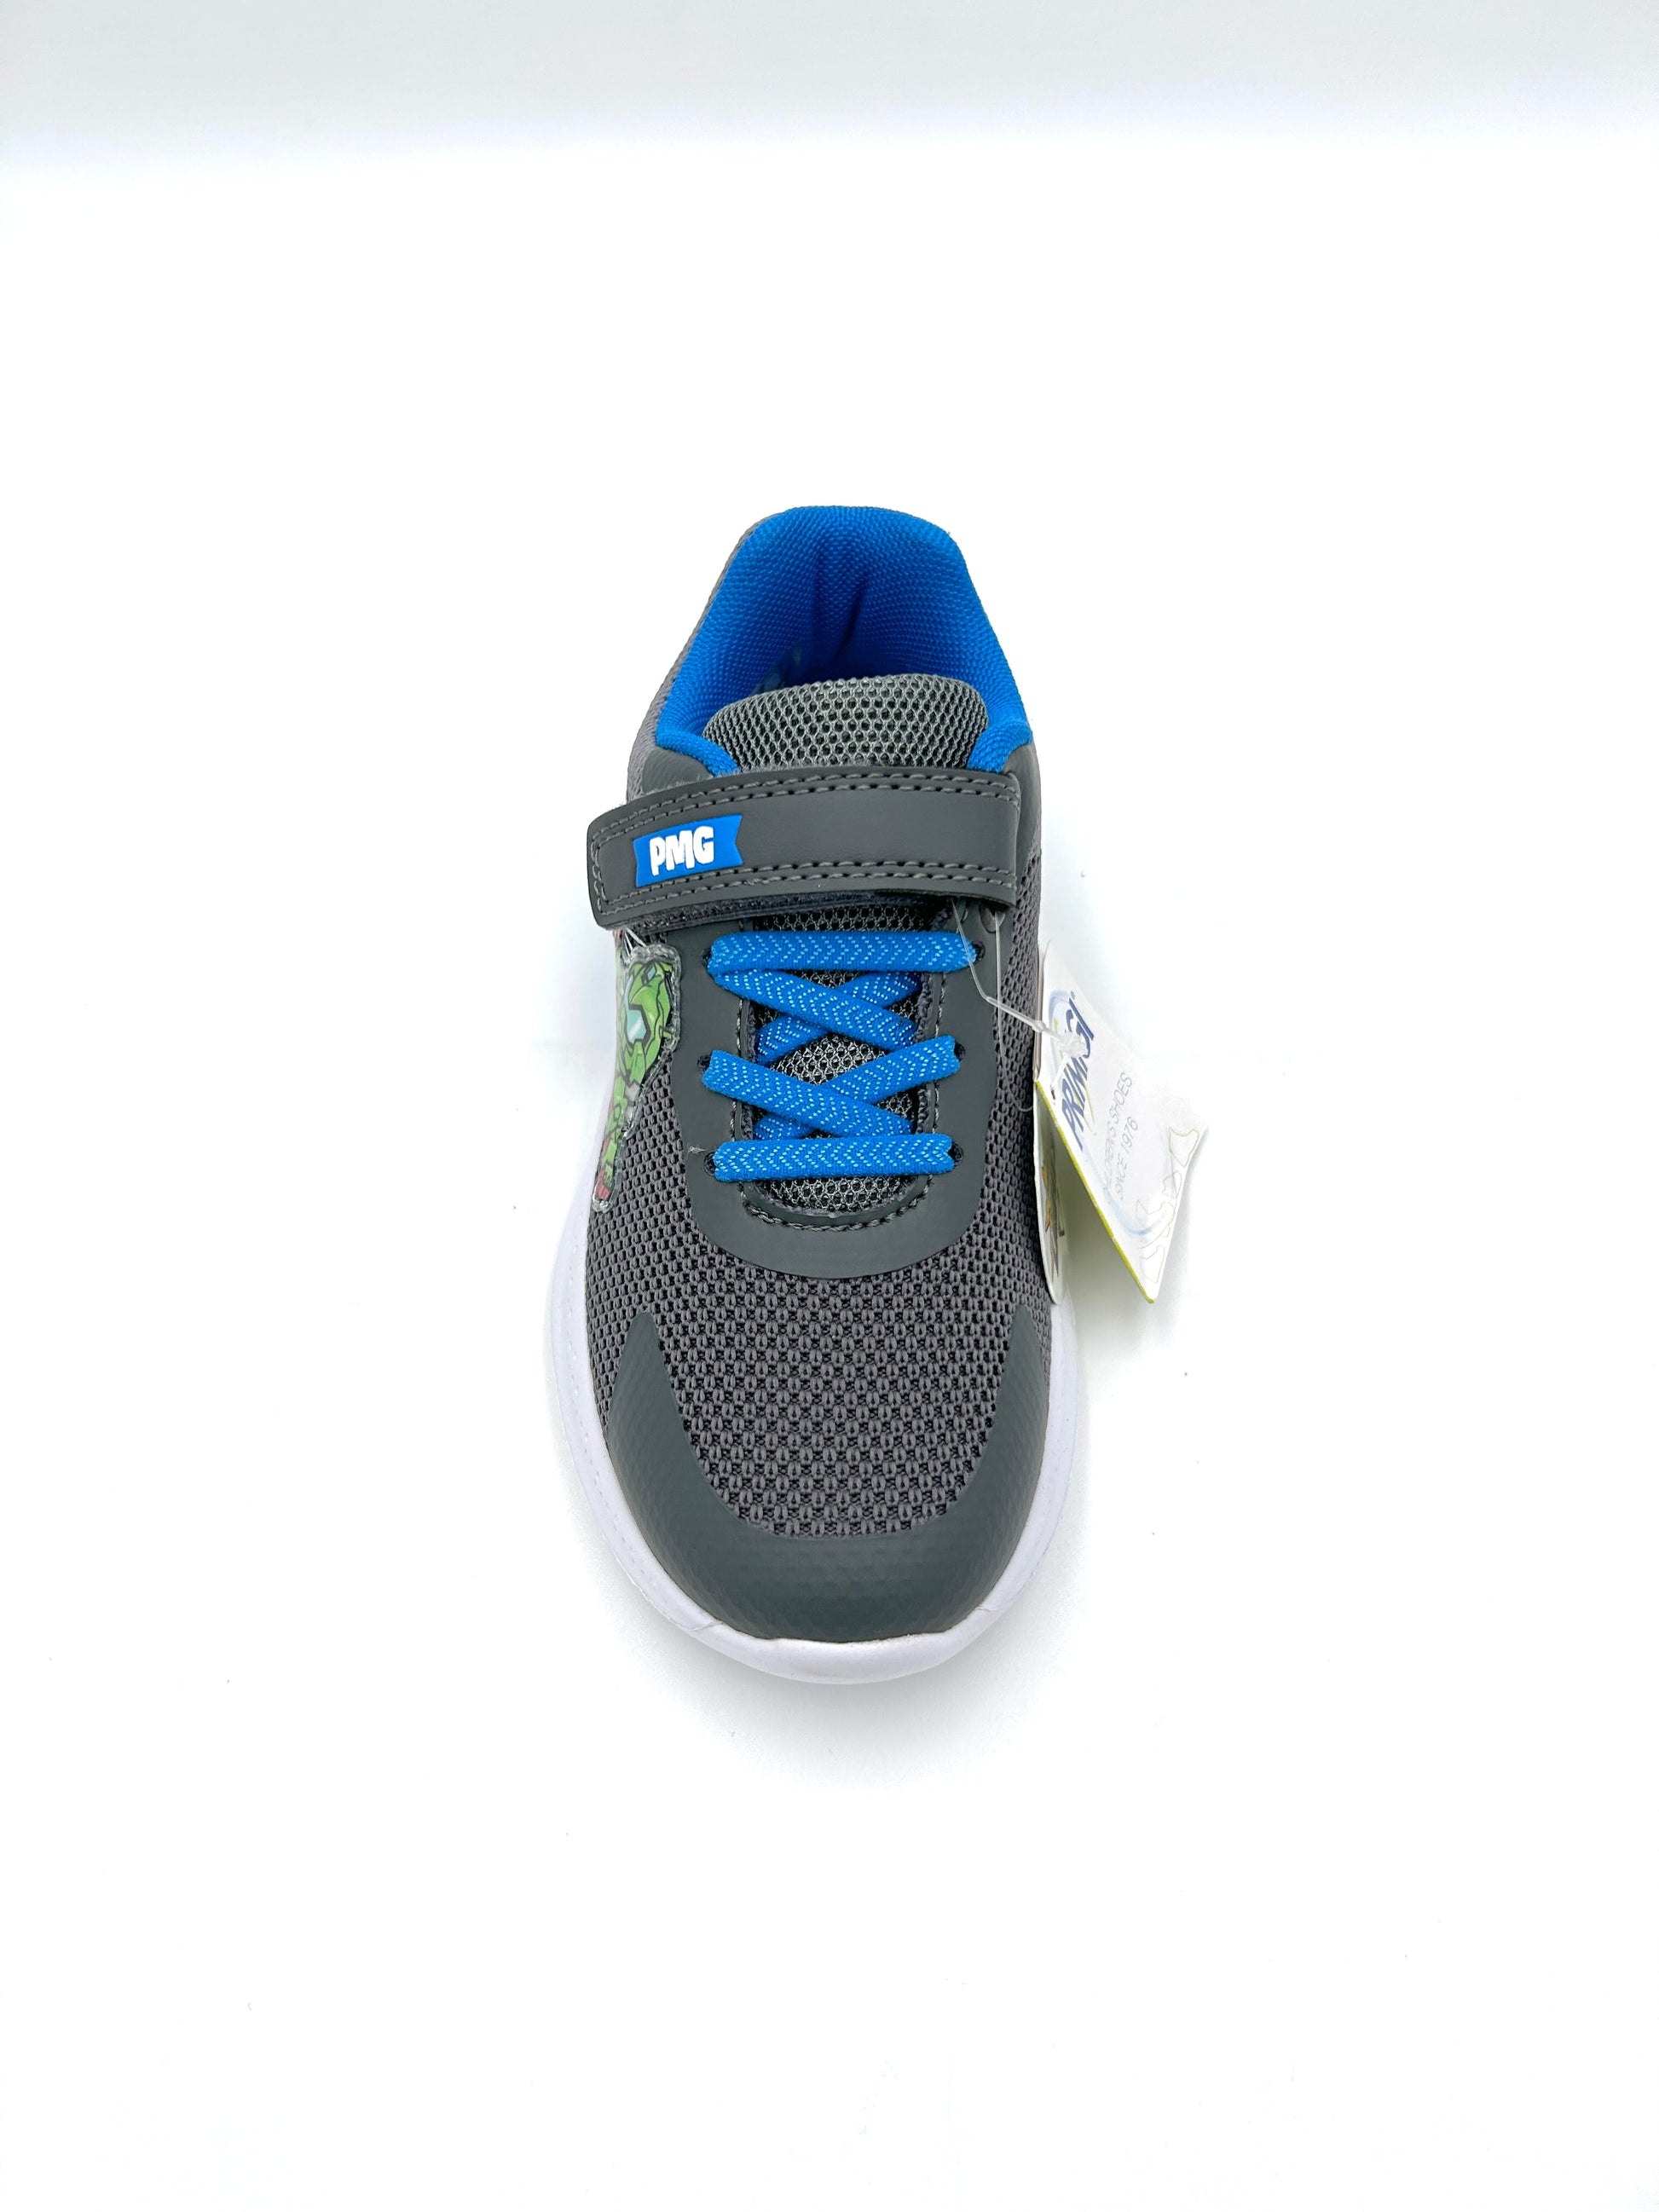 Primigi Sneakers kids in tela con chiusura strappo e lacci elasticizzati - luci led - Primigi